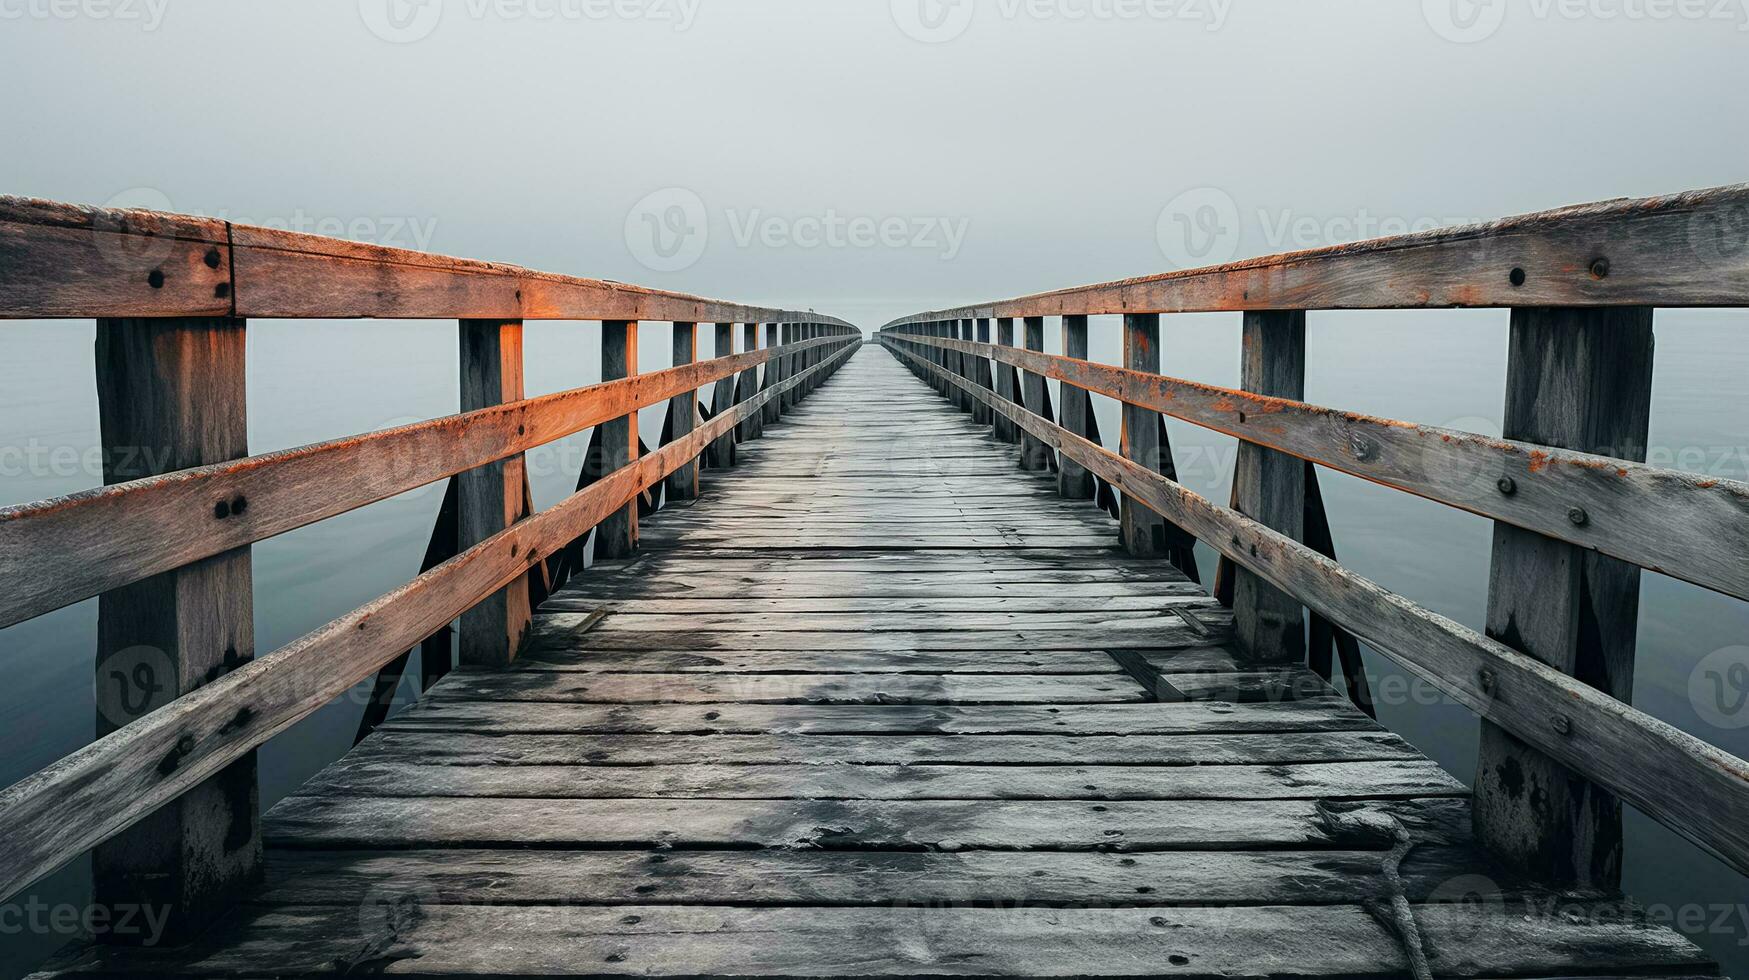 minimalistische perspectief verkennen uniek texturen in weer geslagen ophaalbruggen foto